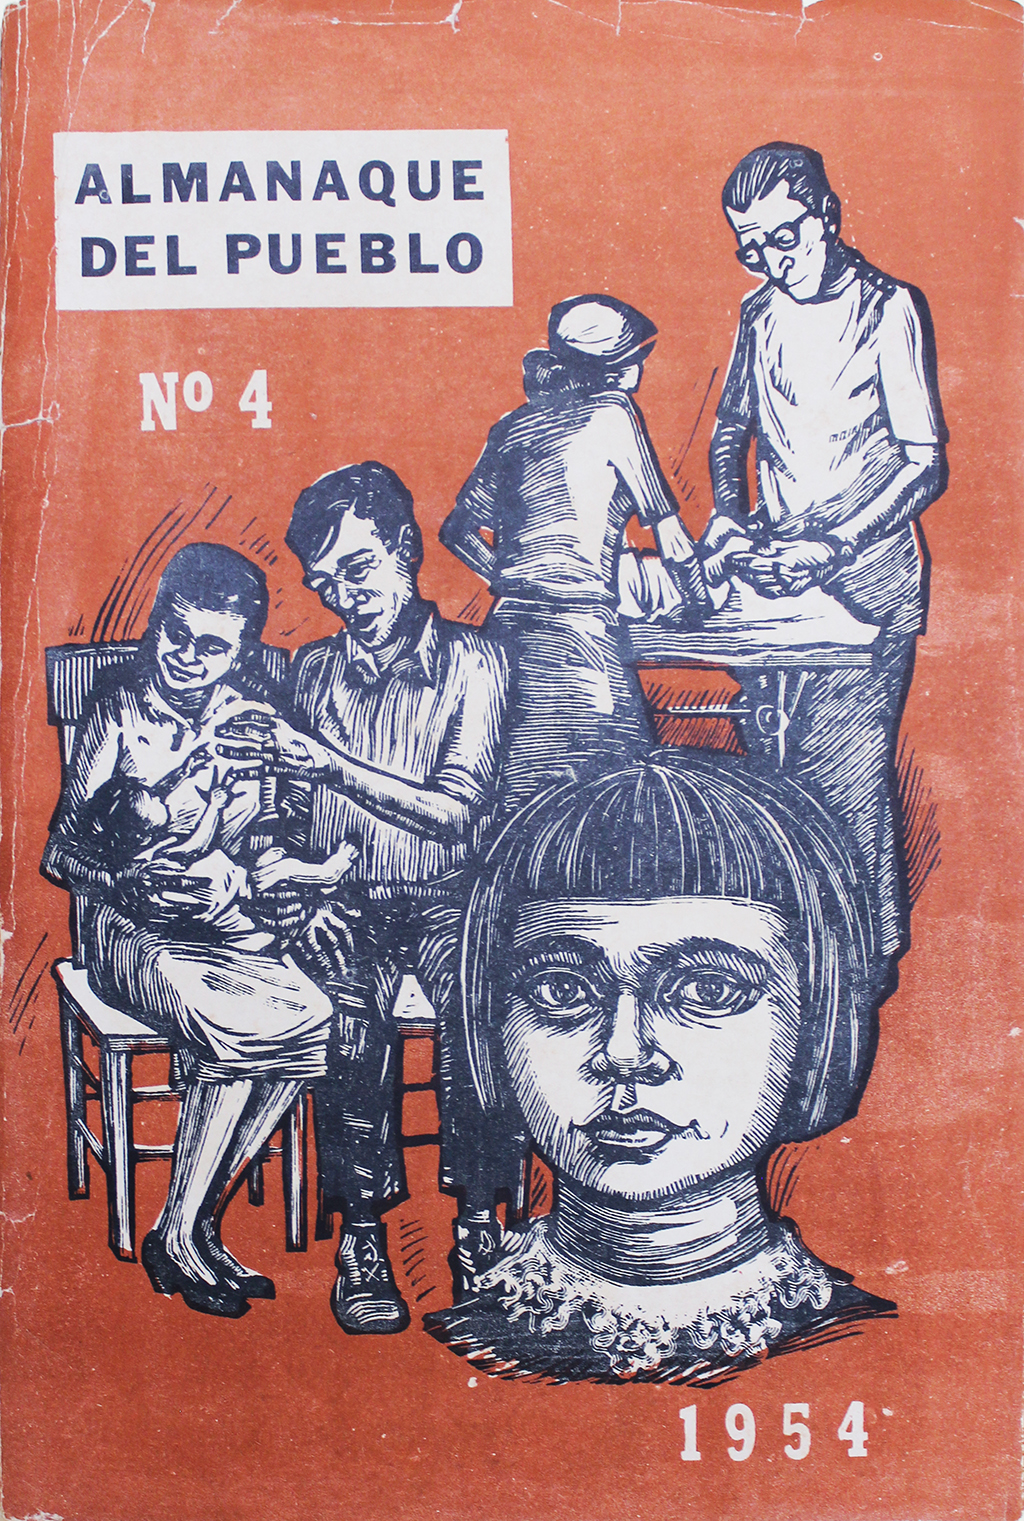 A 1954 cover of the original Almanaque del Pueblo